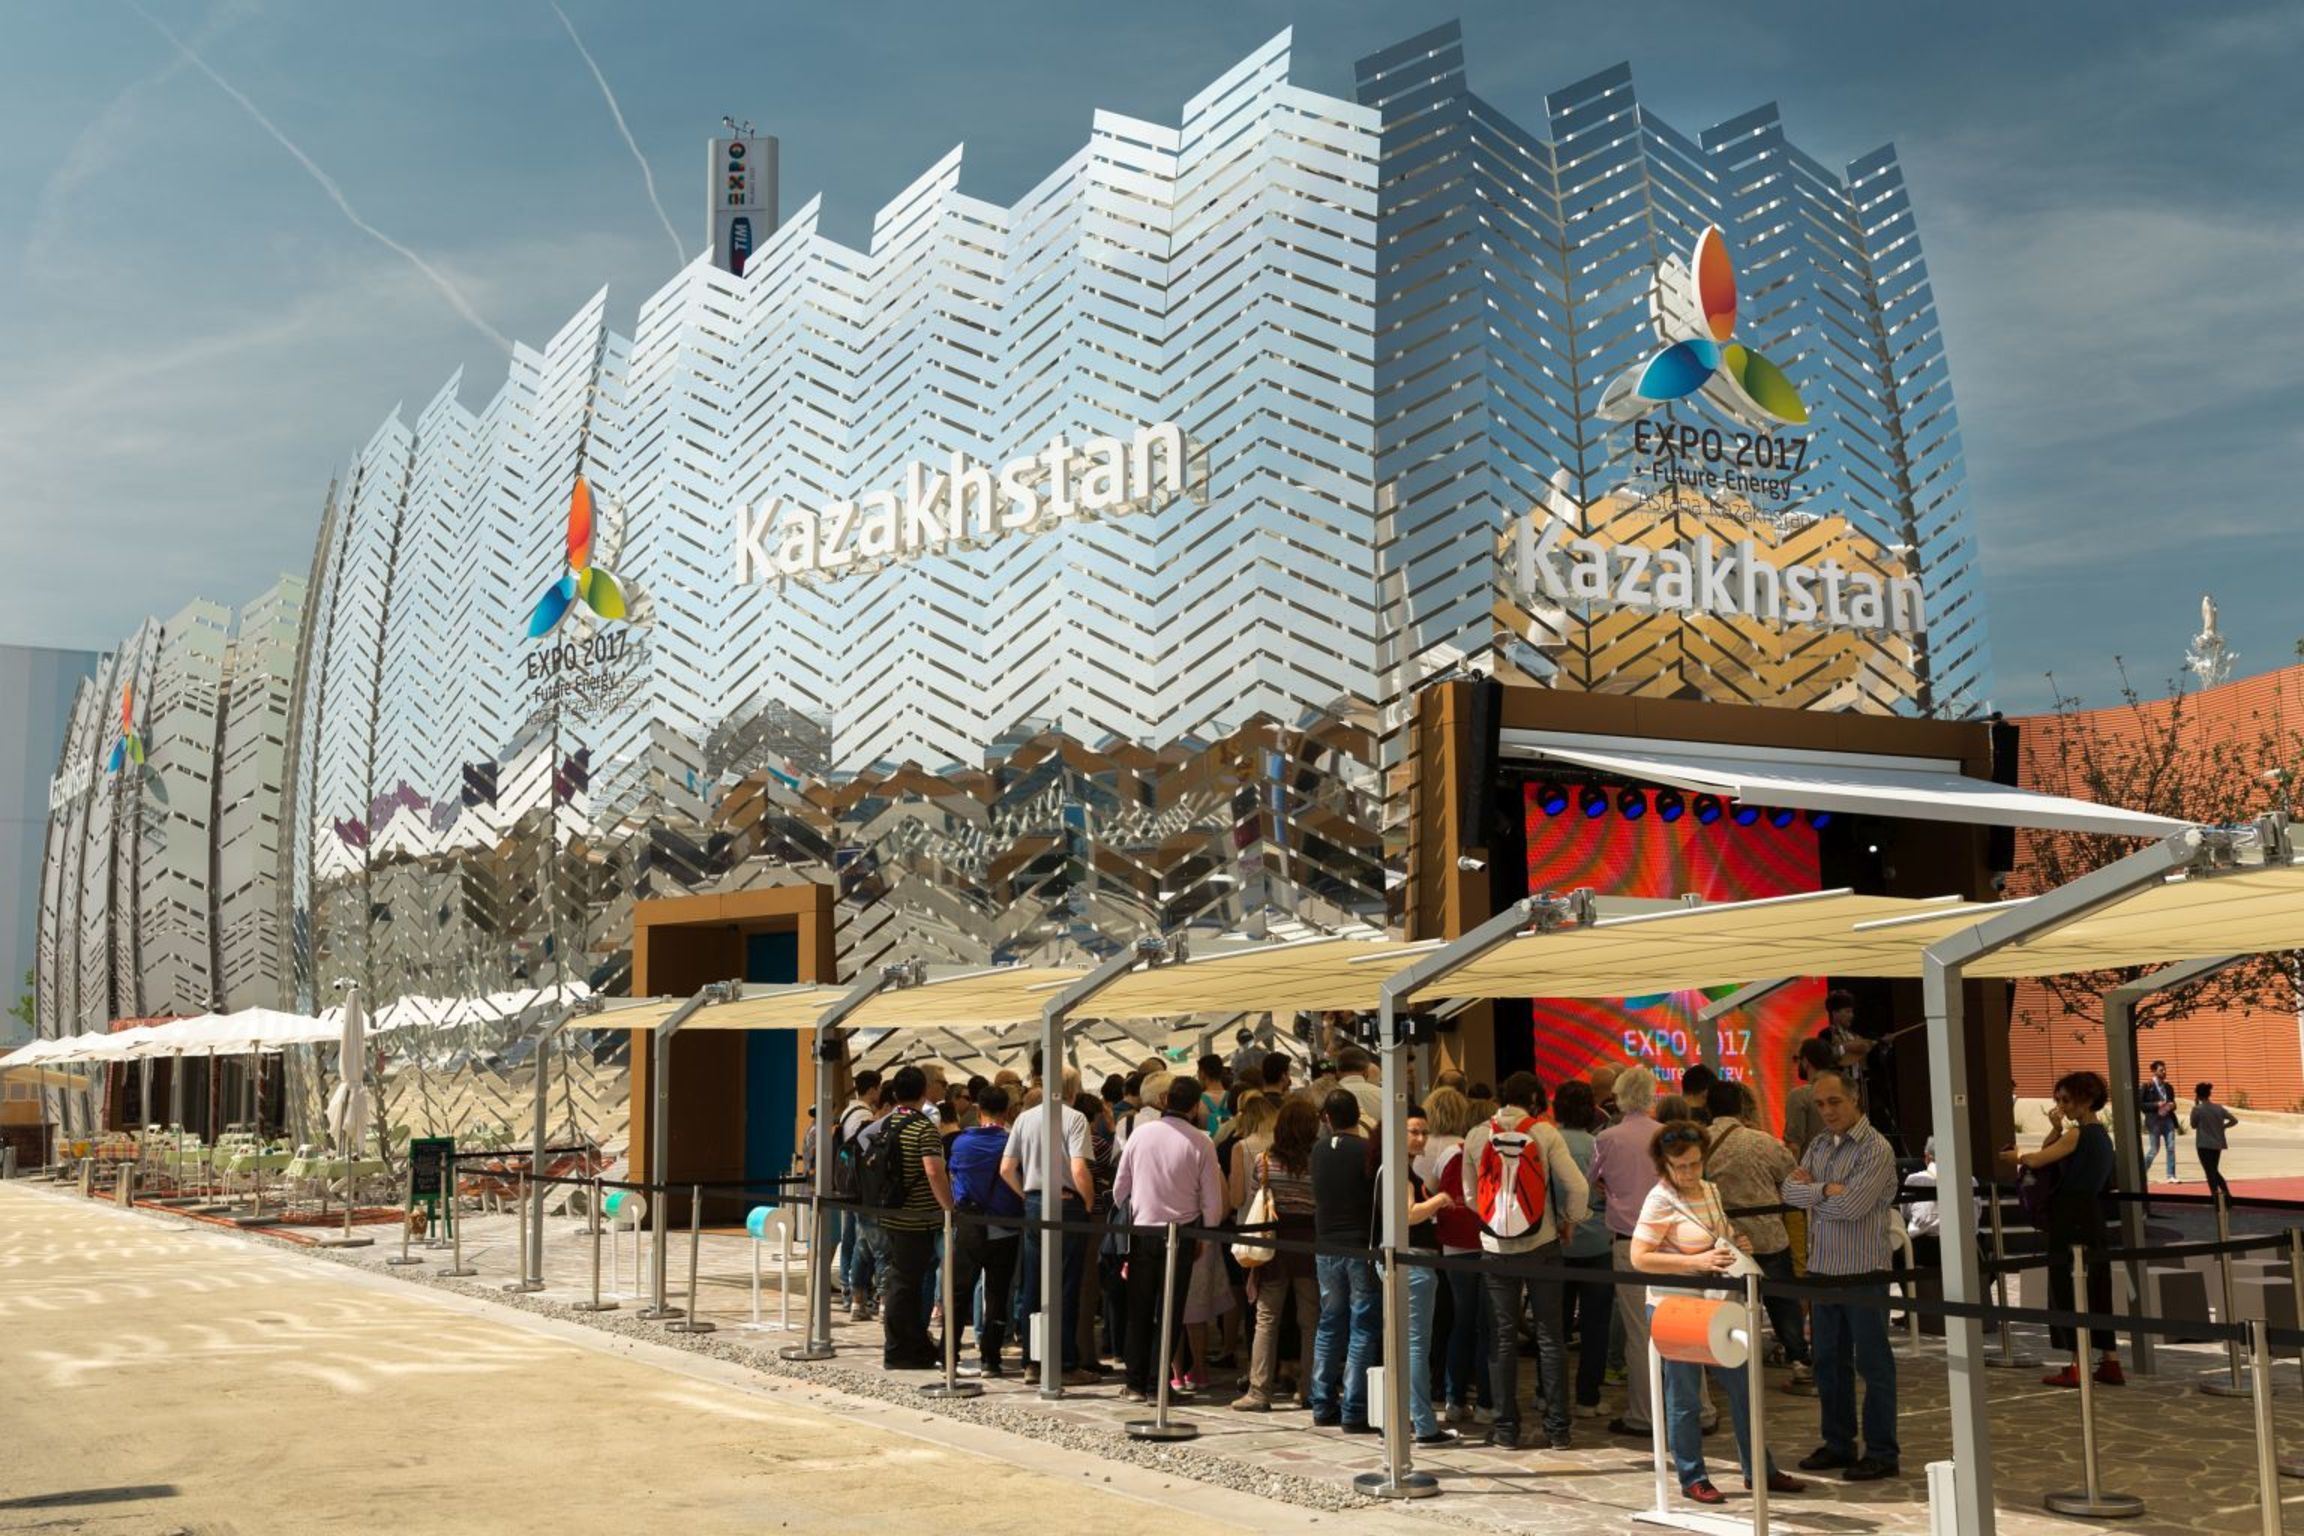 Expo Pavilion Kazachstan